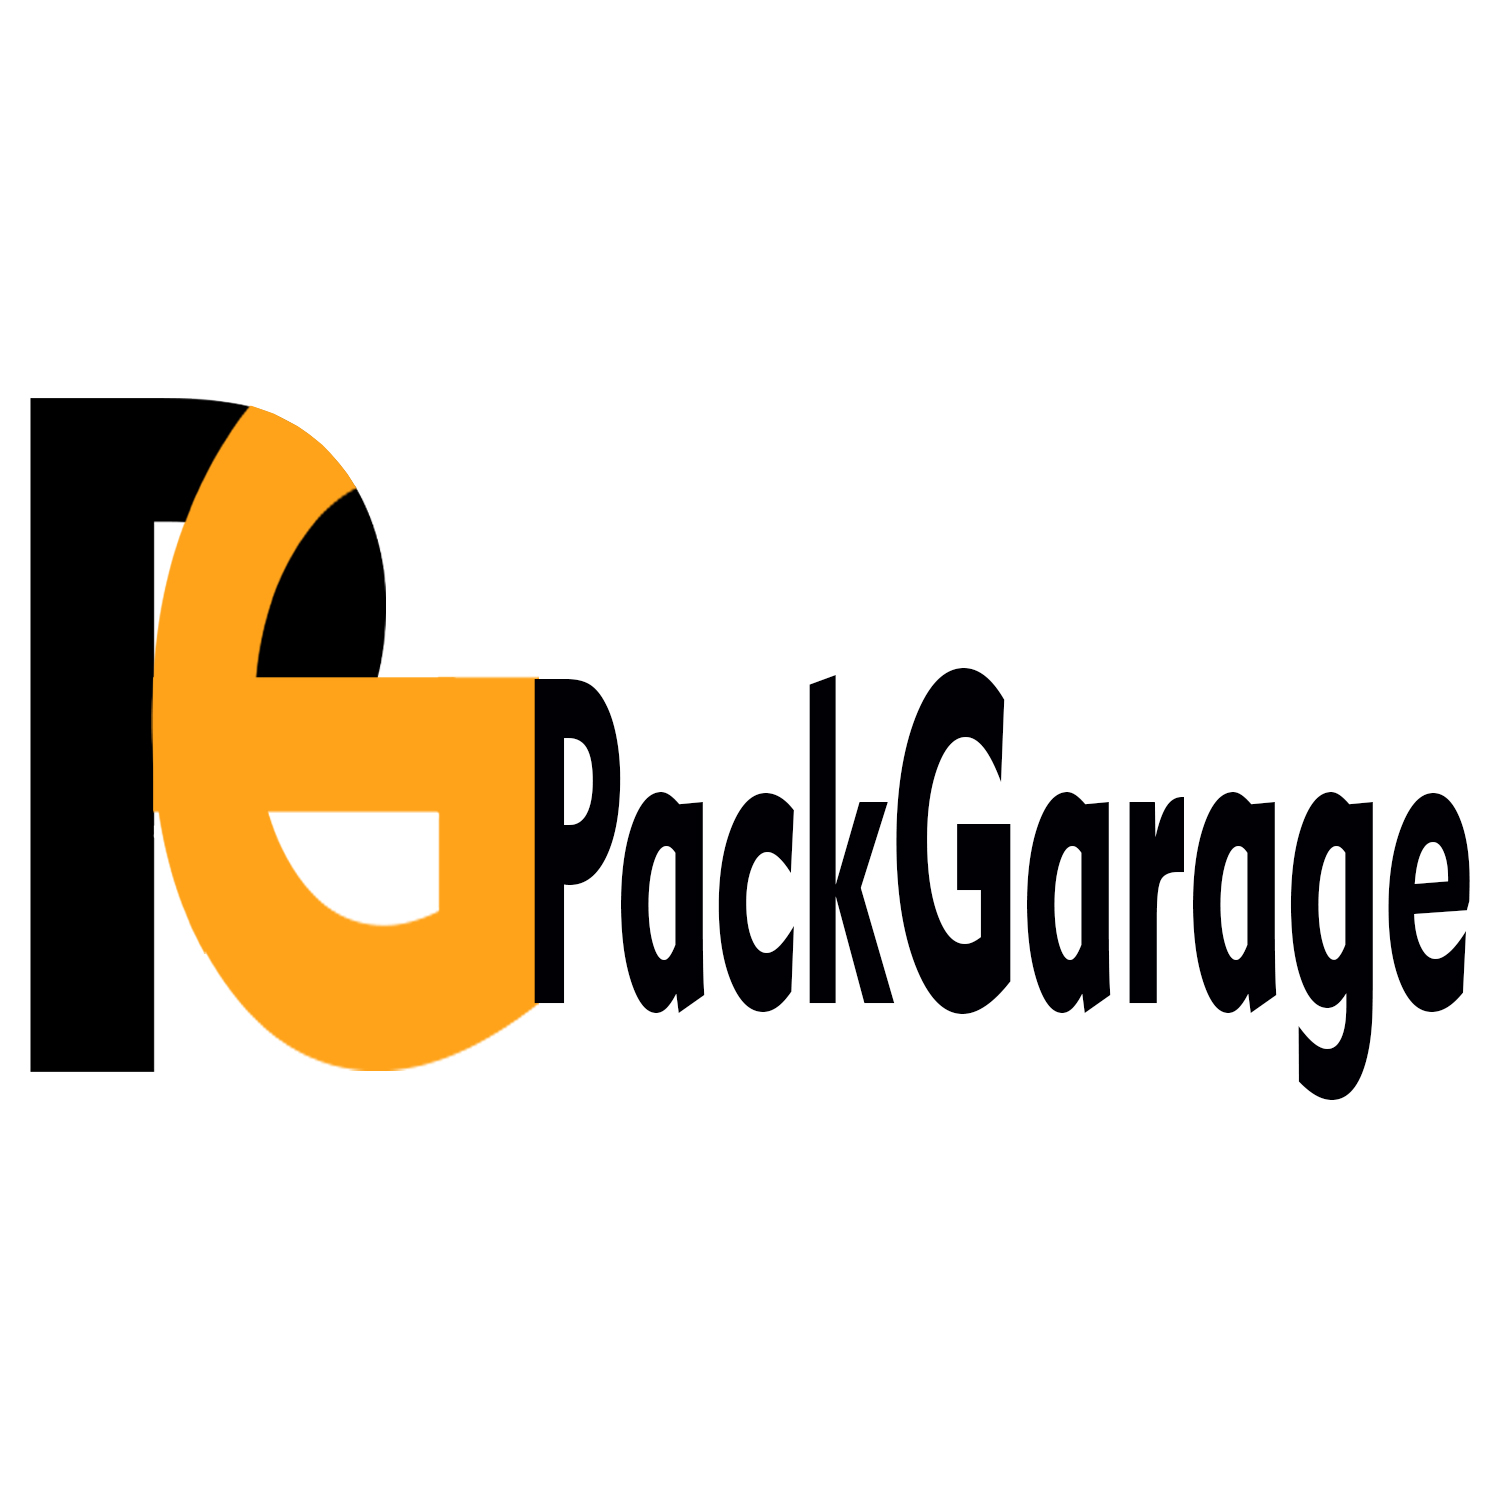 PackGarage